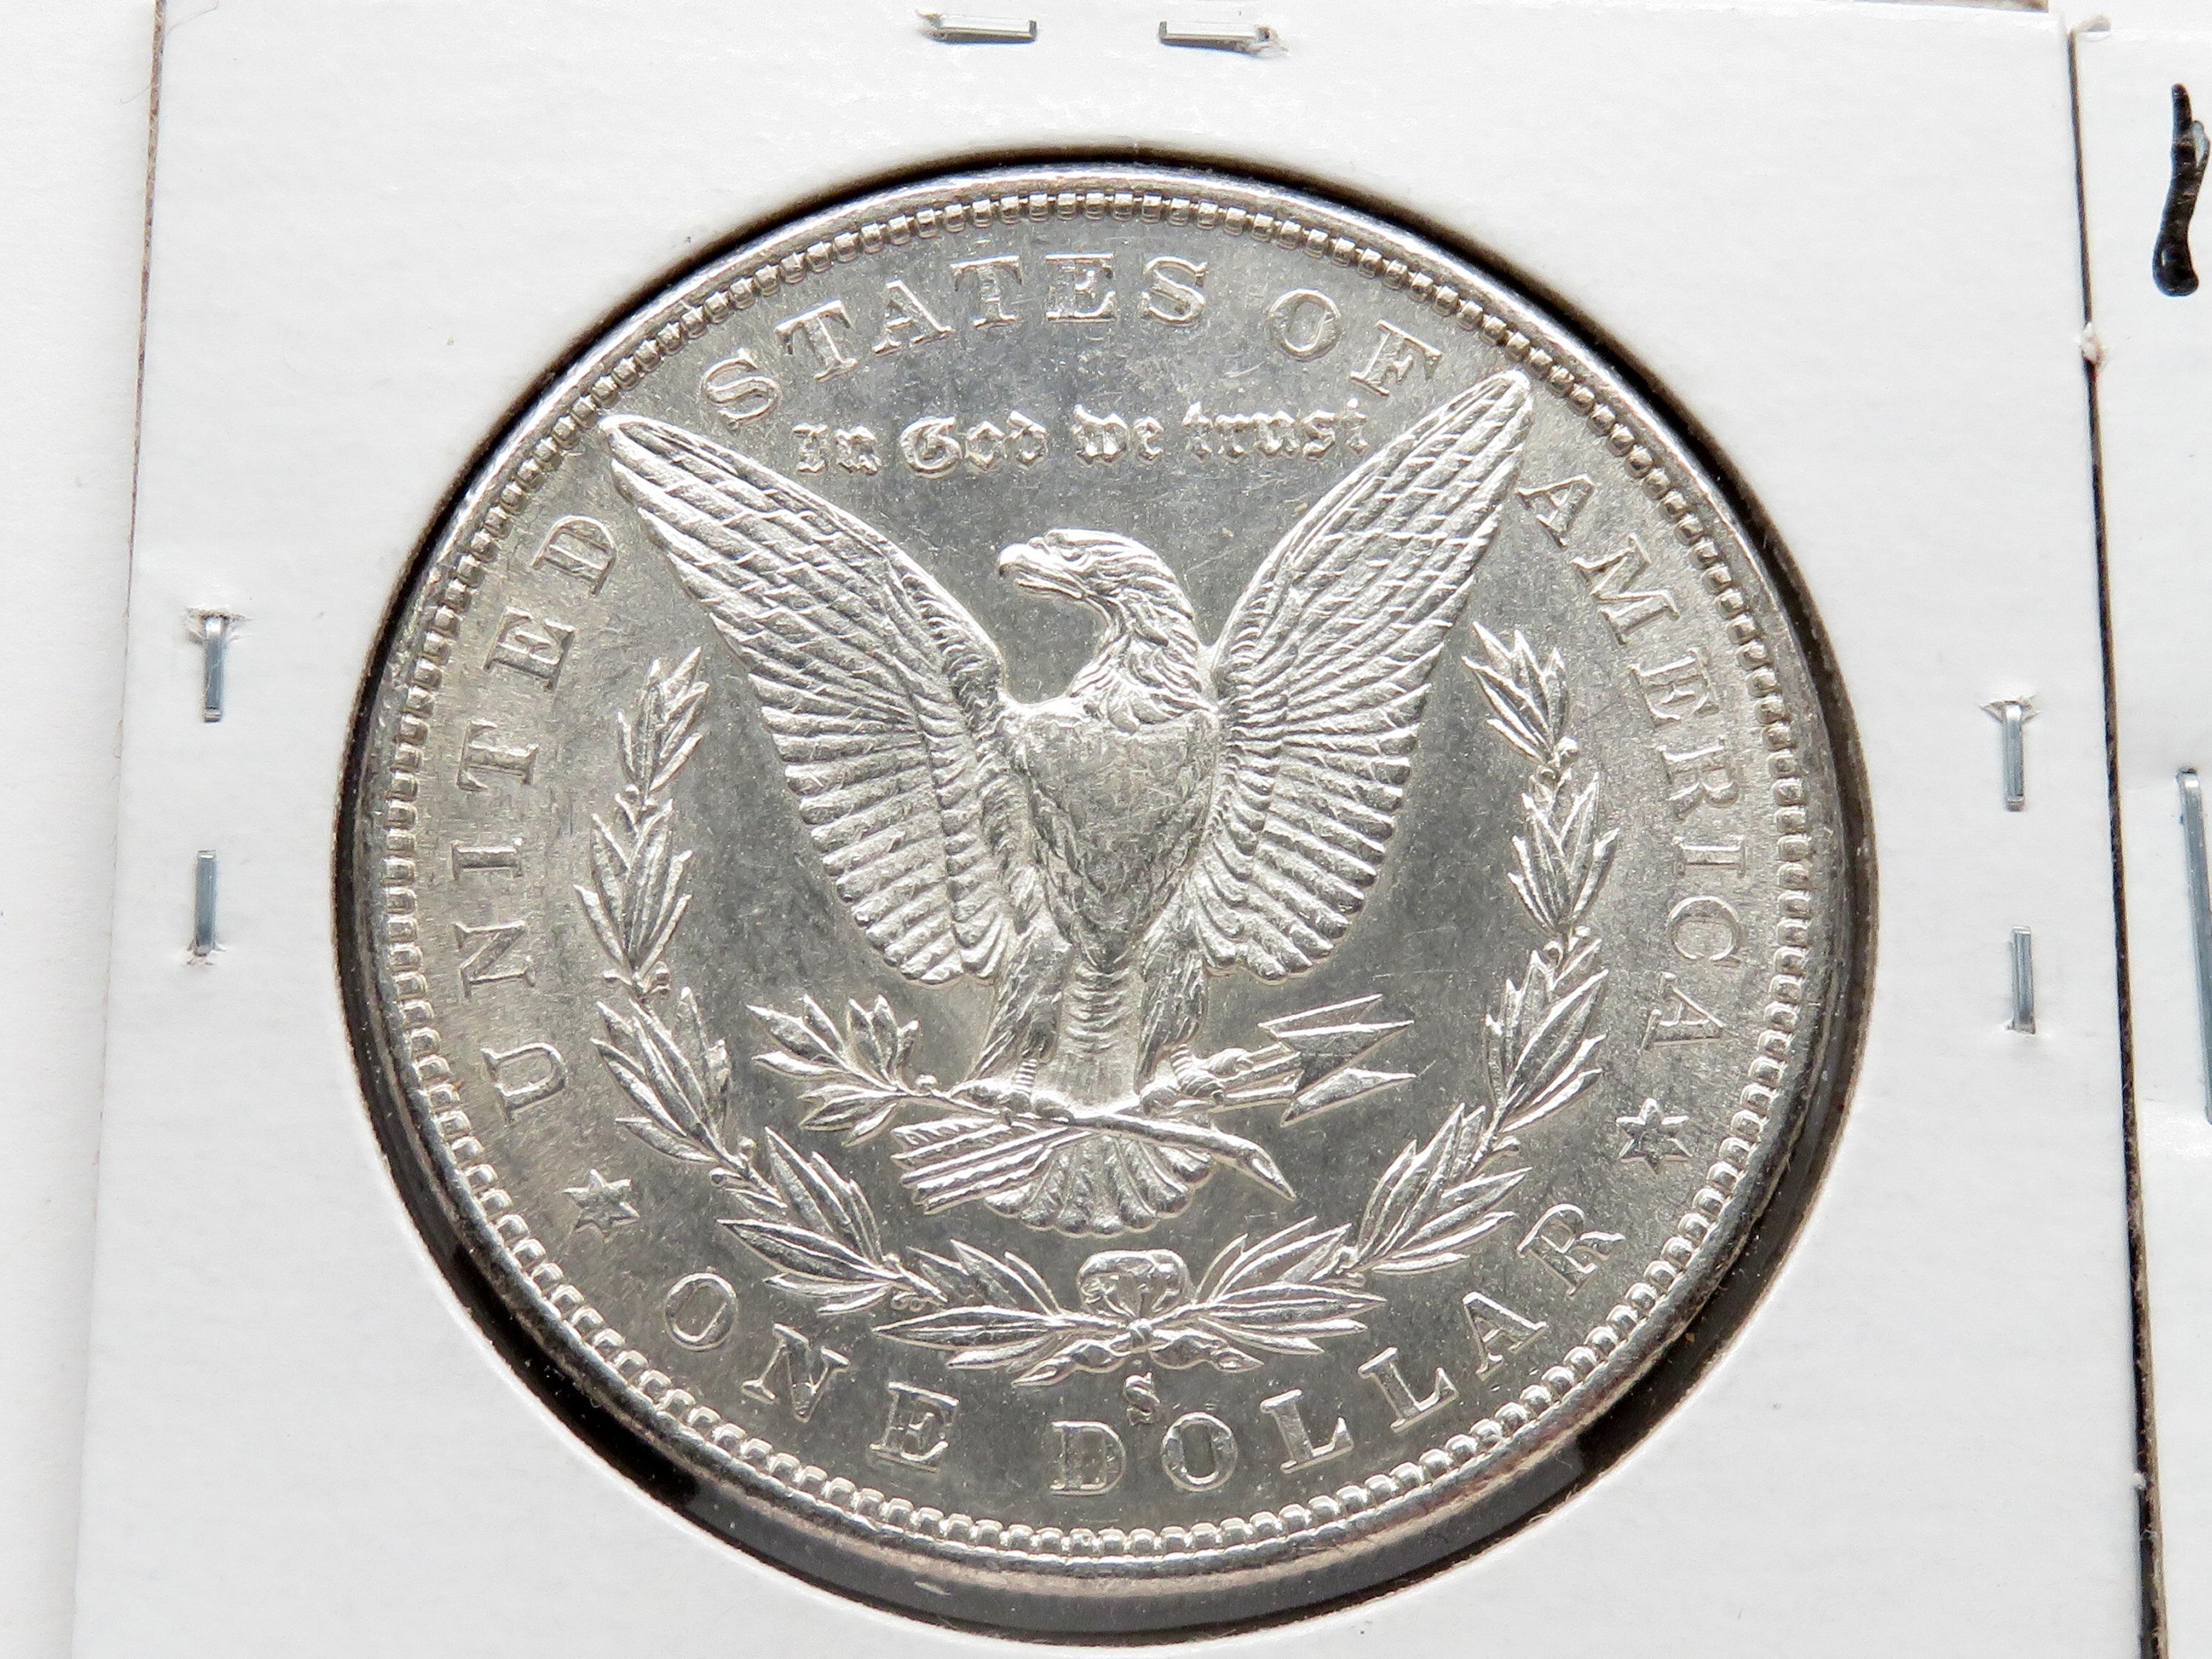 2 Morgan $: 1880S EF, 1921 AU